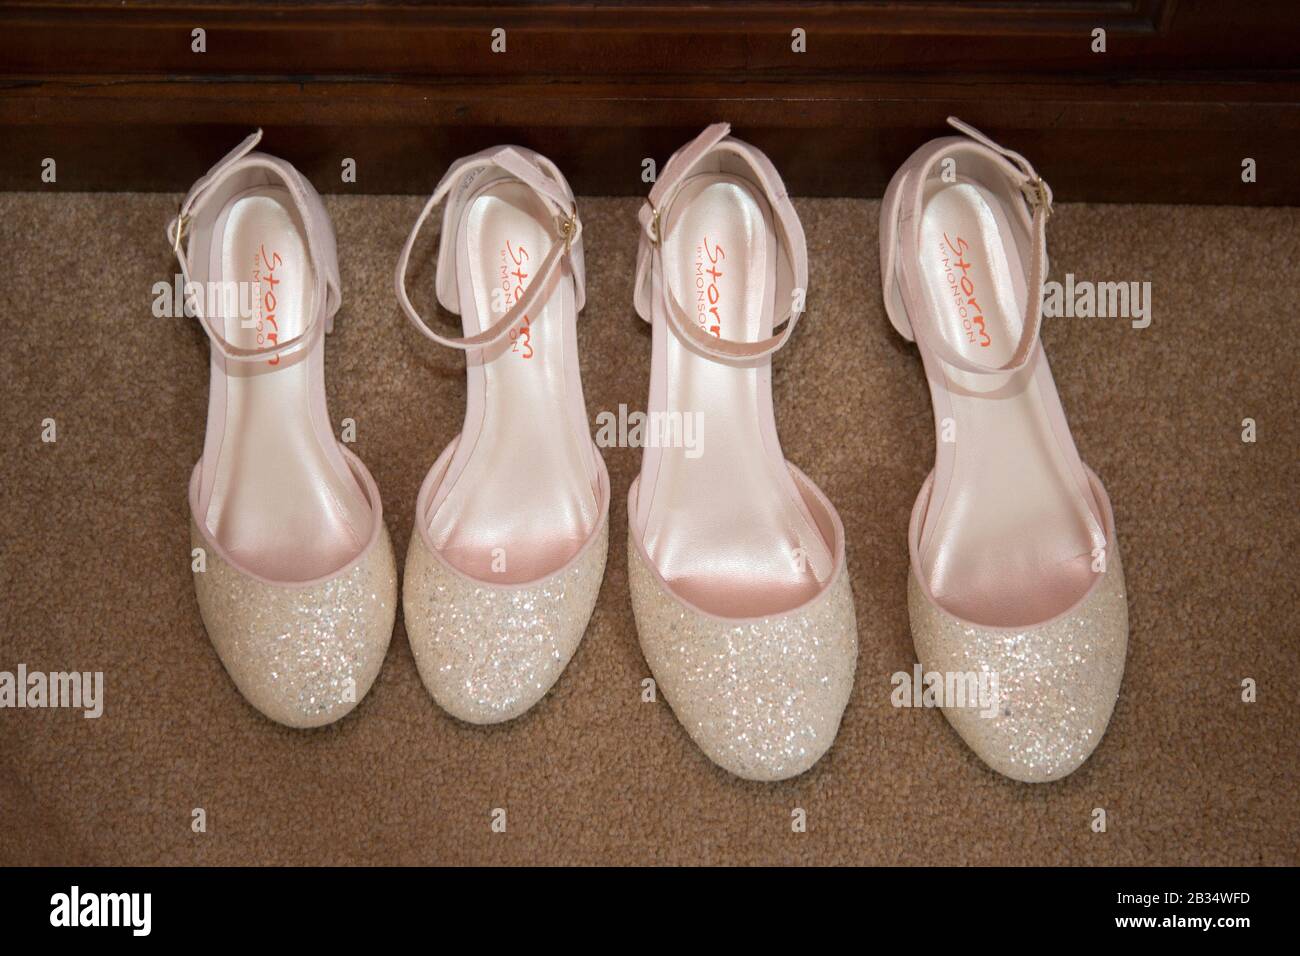 due paia di scarpe da sposa nuovissime che aspettano di essere indossate il giorno del matrimonio, scarpe rosa e scintillanti Foto Stock